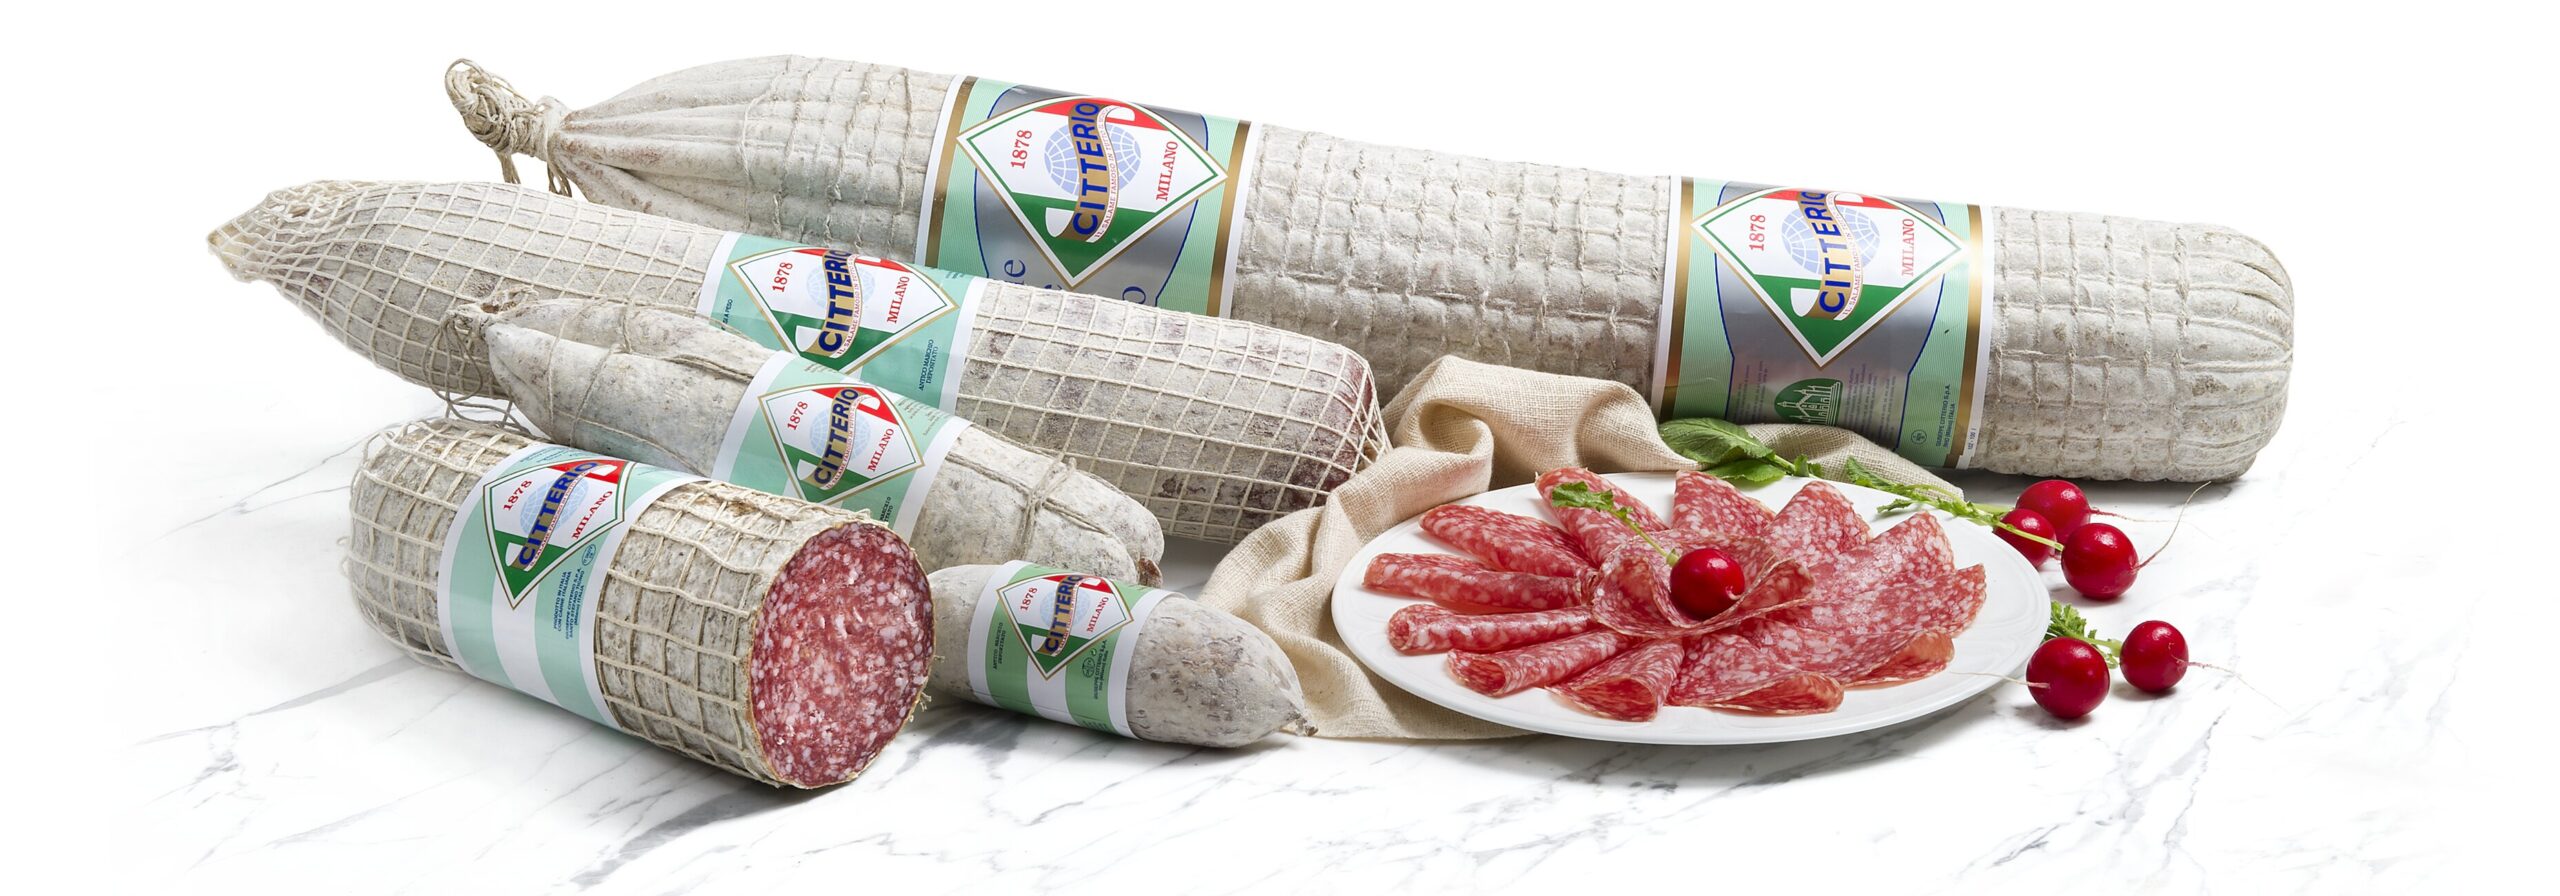 Bonizzi Alberto Produkten von | Citterio AG Lebensmittelimport